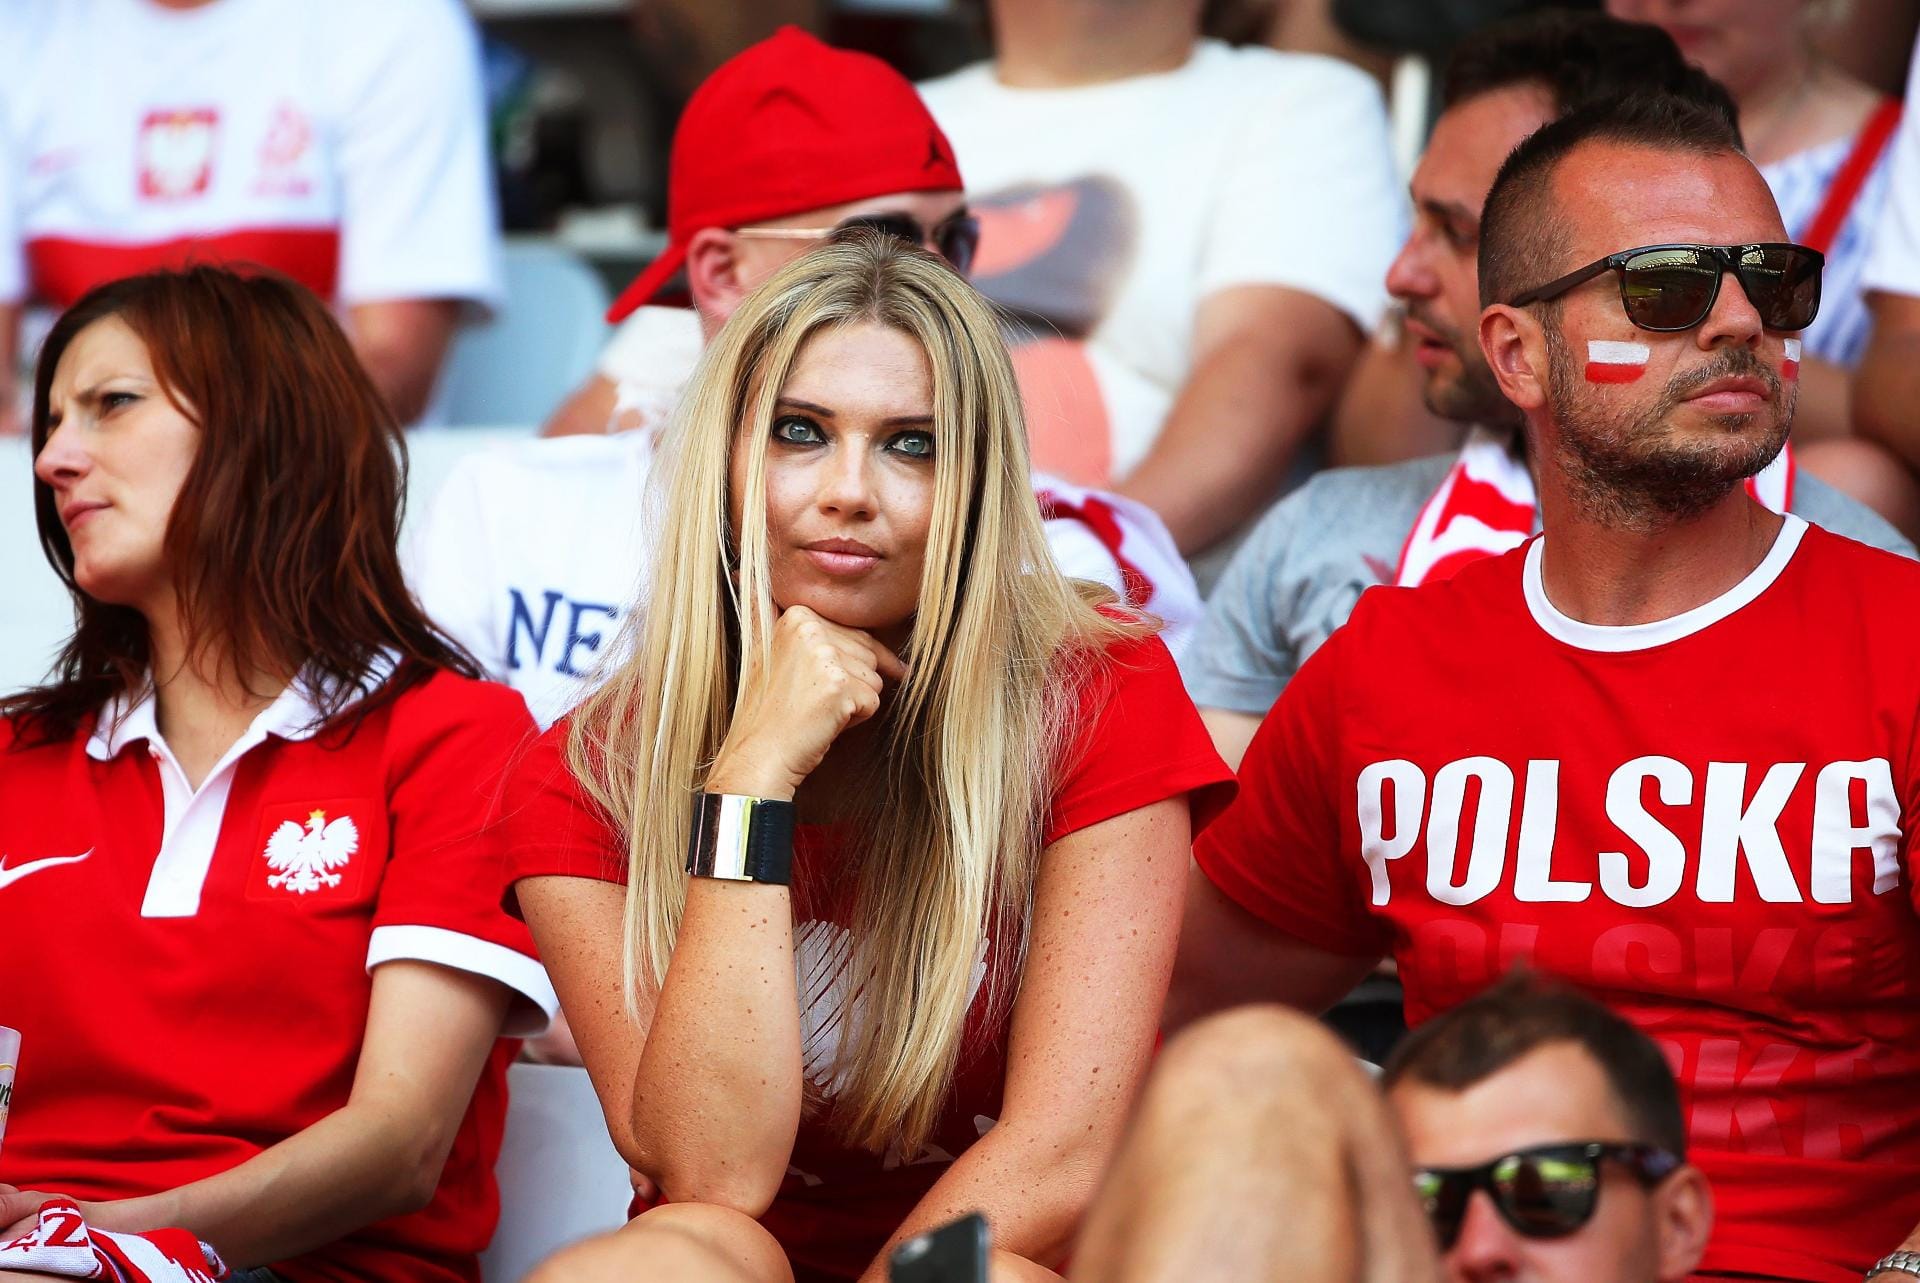 Auch dieser polnische Fan schaut etwas skeptsich im Spiel Polen gegen Nordirland. Am Ende siegte ihr Team 1:0.